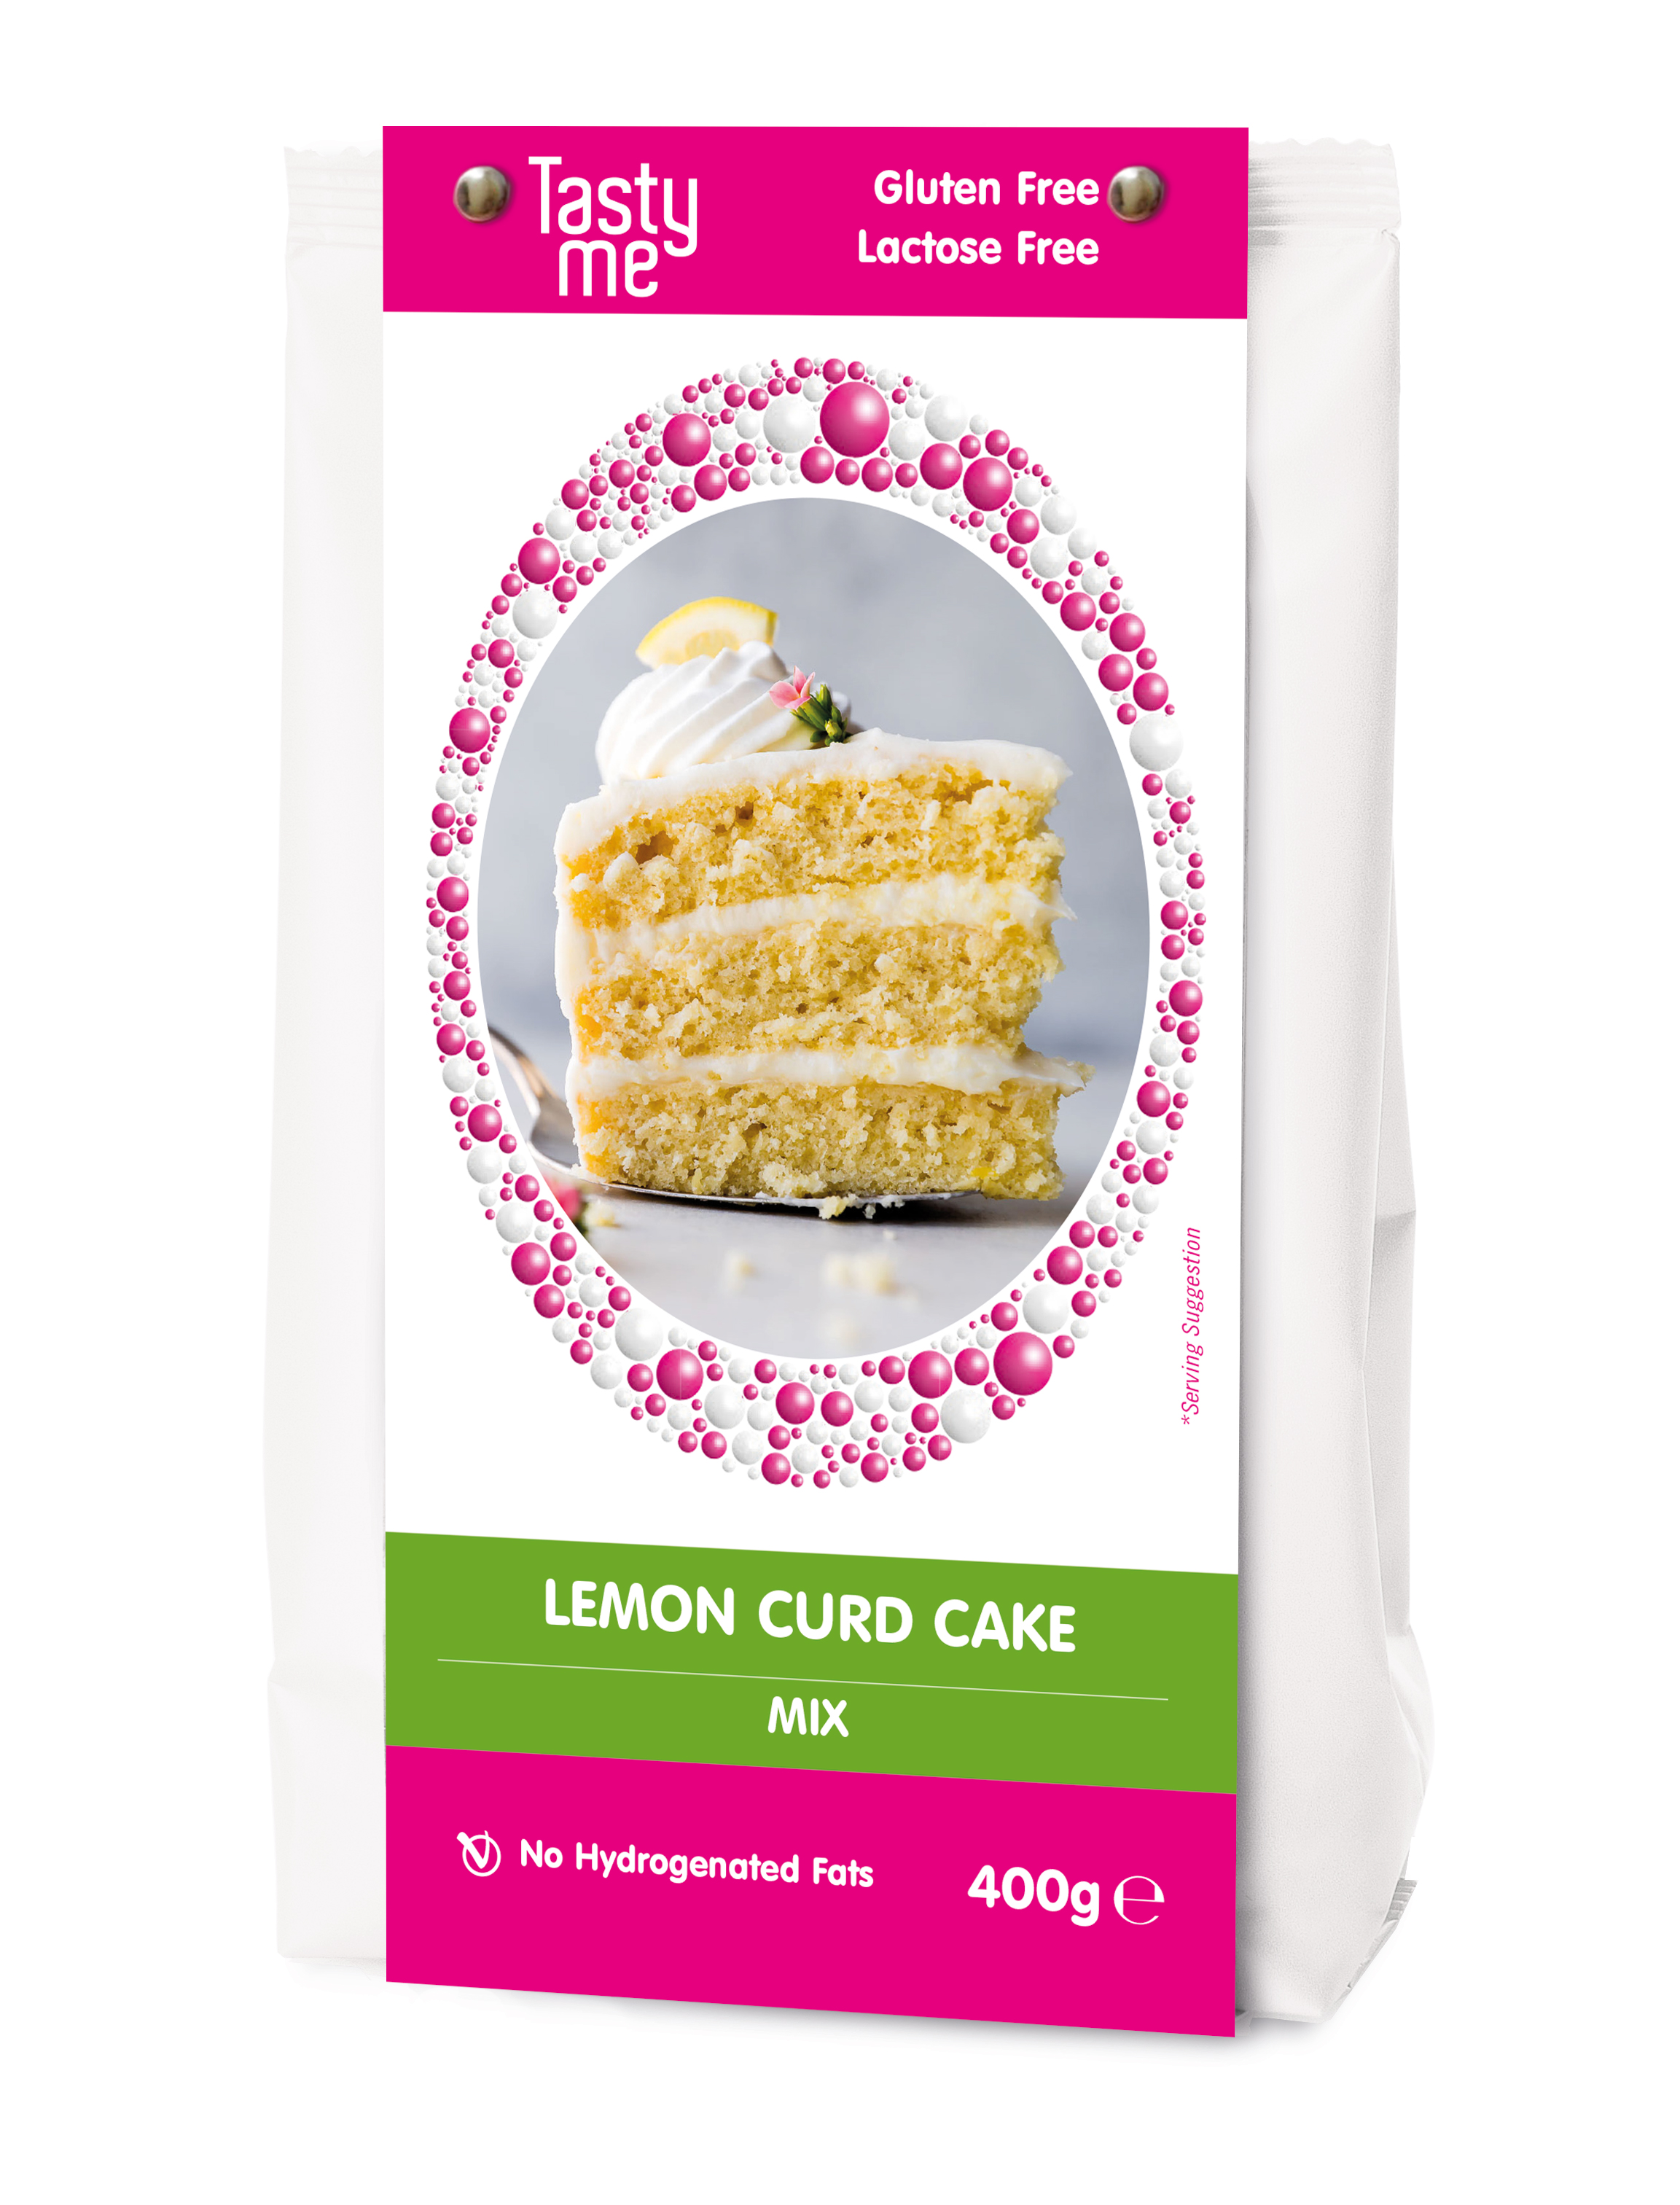 Lemoncurd cake mix 400g - gluten-free